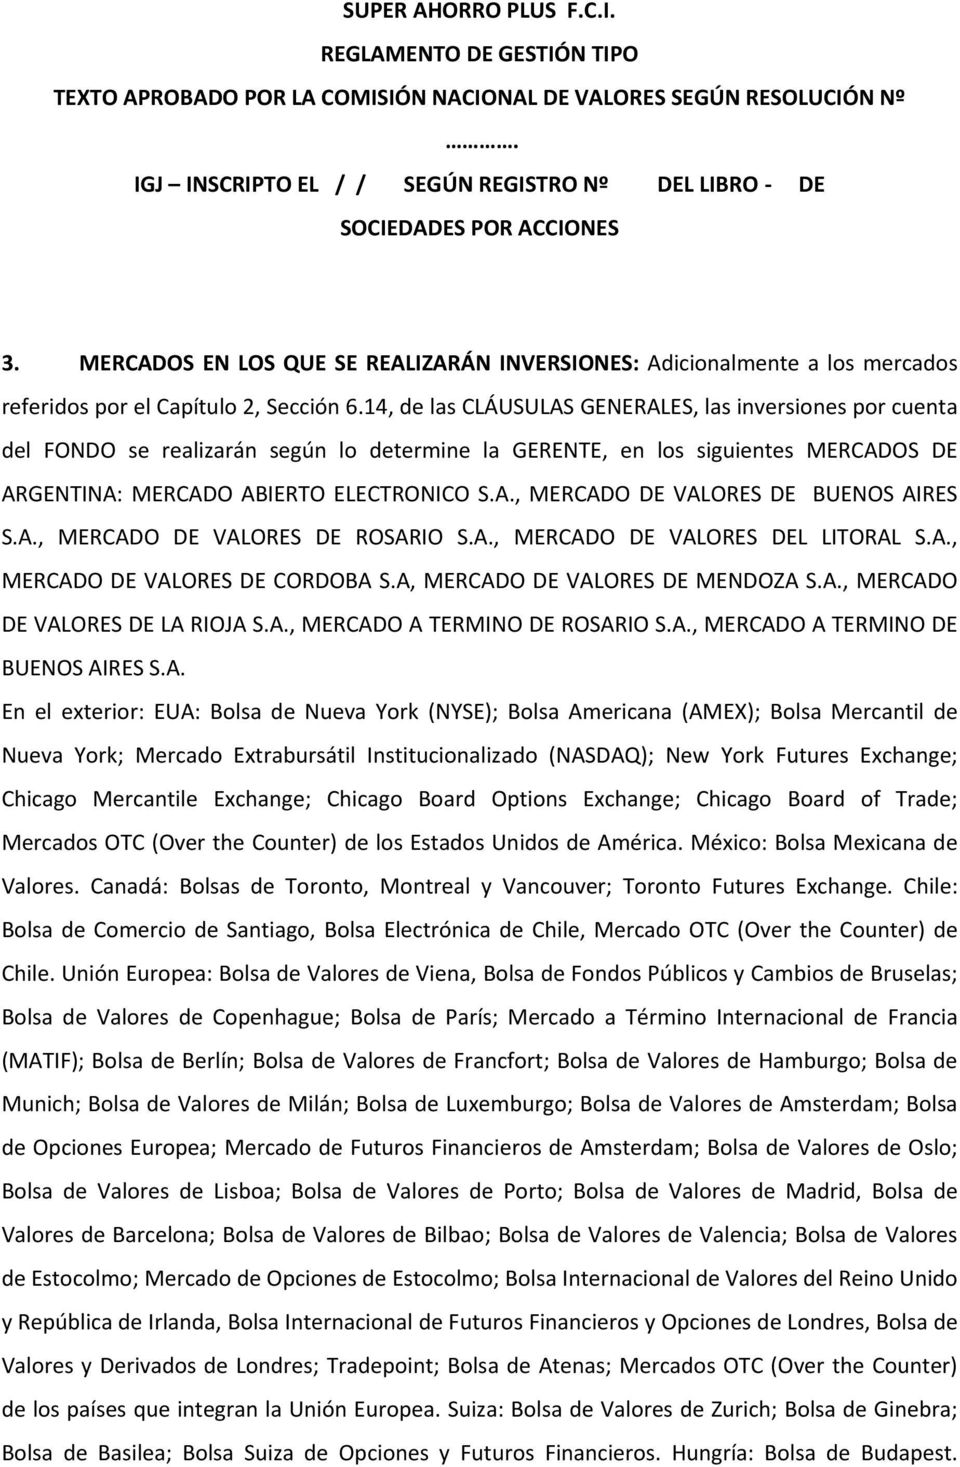 A., MERCADO DE VALORES DE ROSARIO S.A., MERCADO DE VALORES DEL LITORAL S.A., MERCADO DE VALORES DE CORDOBA S.A, MERCADO DE VALORES DE MENDOZA S.A., MERCADO DE VALORES DE LA RIOJA S.A., MERCADO A TERMINO DE ROSARIO S.